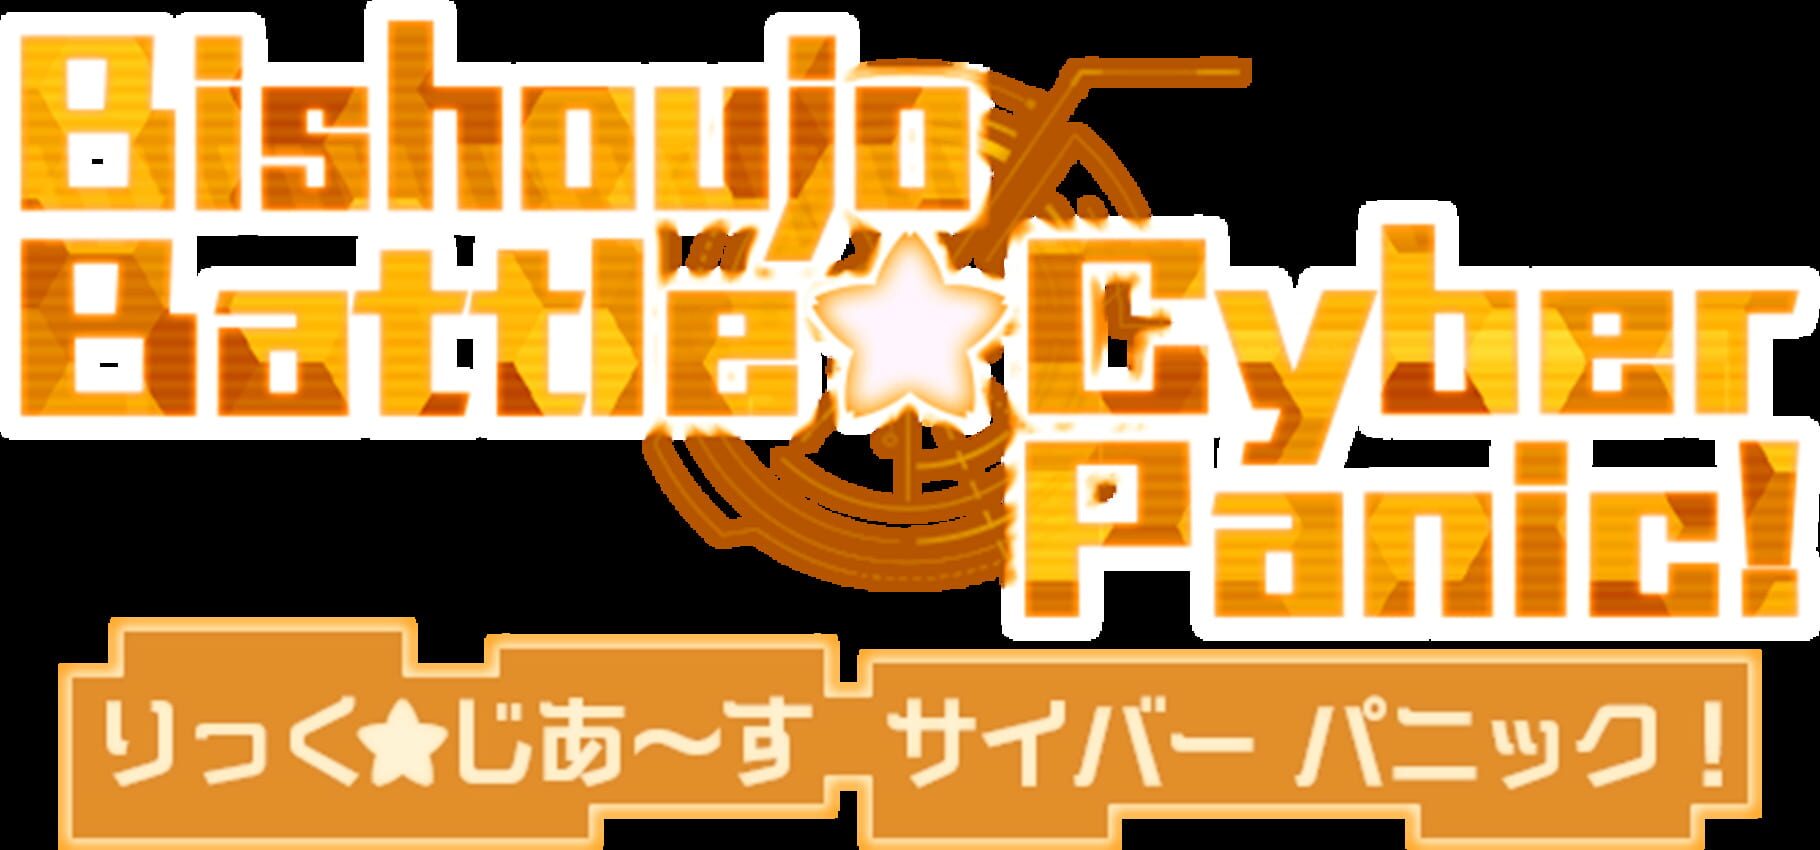 Bishoujo Battle Cyber Panic! screenshot